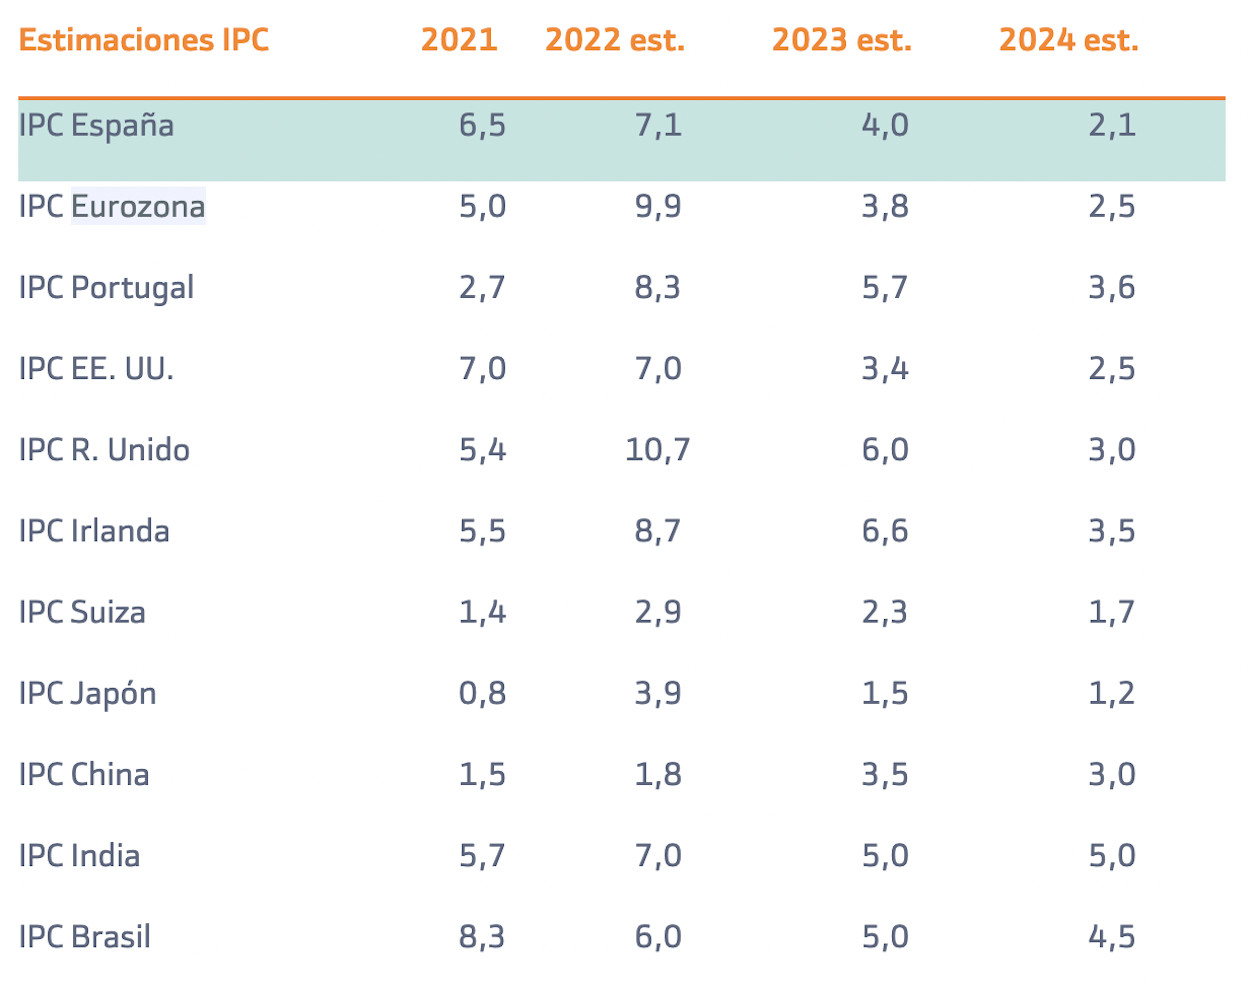 Fuente: Informe Previsión del IPC 2022, 2023 y 2024 por países, Bankinter.